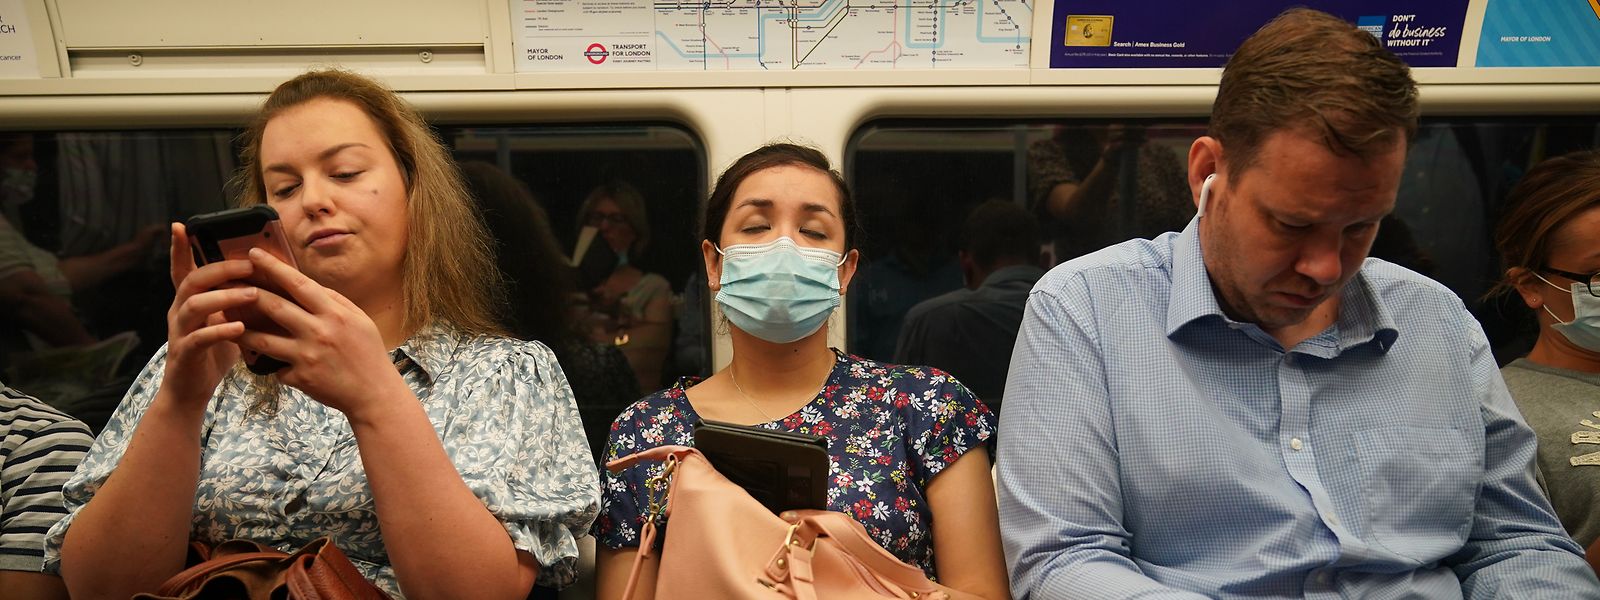 Pendler in einem Londoner U-Bahn-Zug am Montagmorgen, einige noch mit Mund-Nasen-Schutz andere ohne, nachdem die letzten Corona-Maßnahmen aufgehoben wurden.